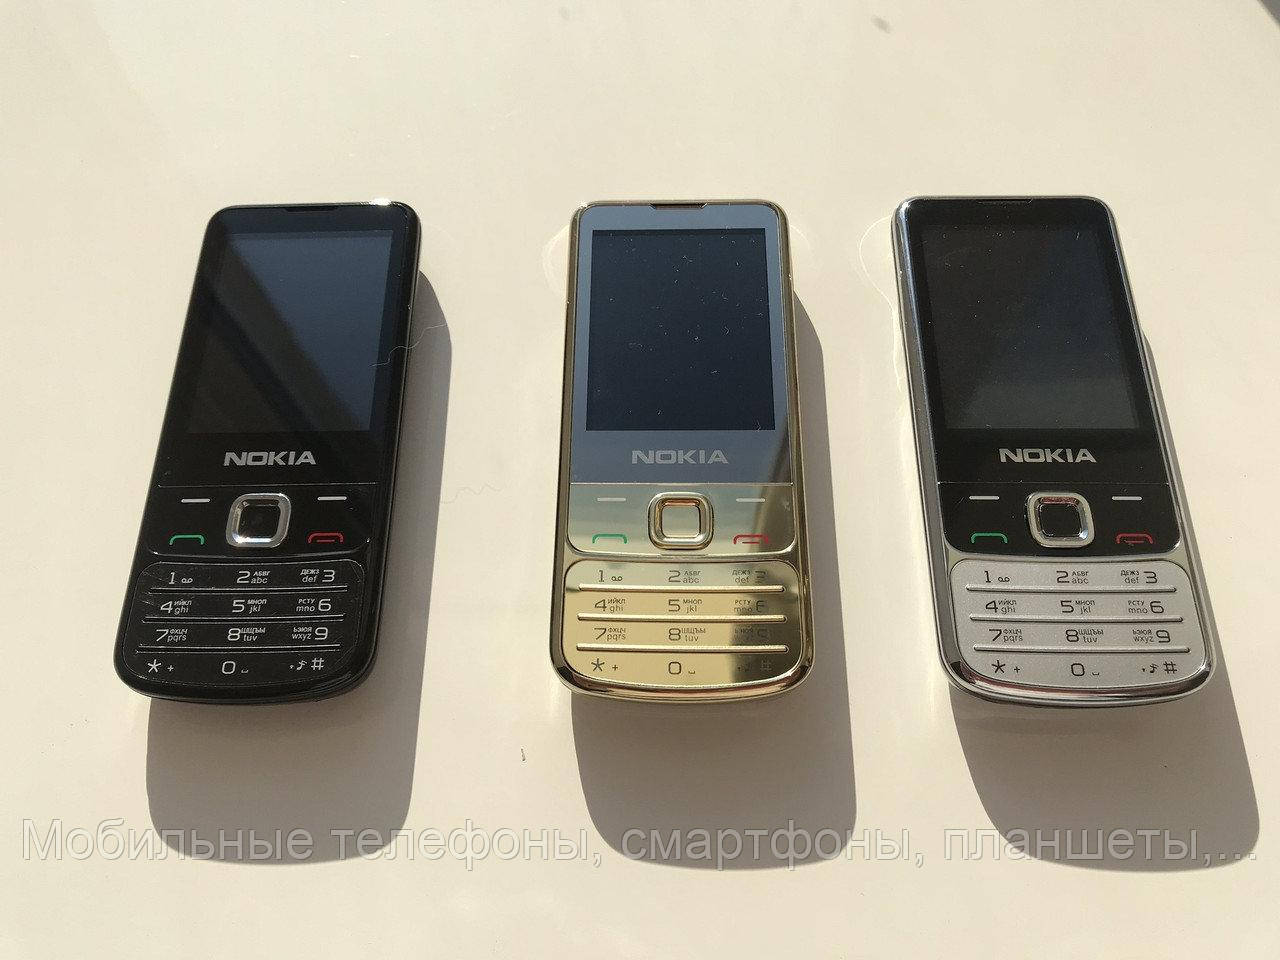 Мобильный телефон Nokia 6700 Duos Silver, classic, gold, black